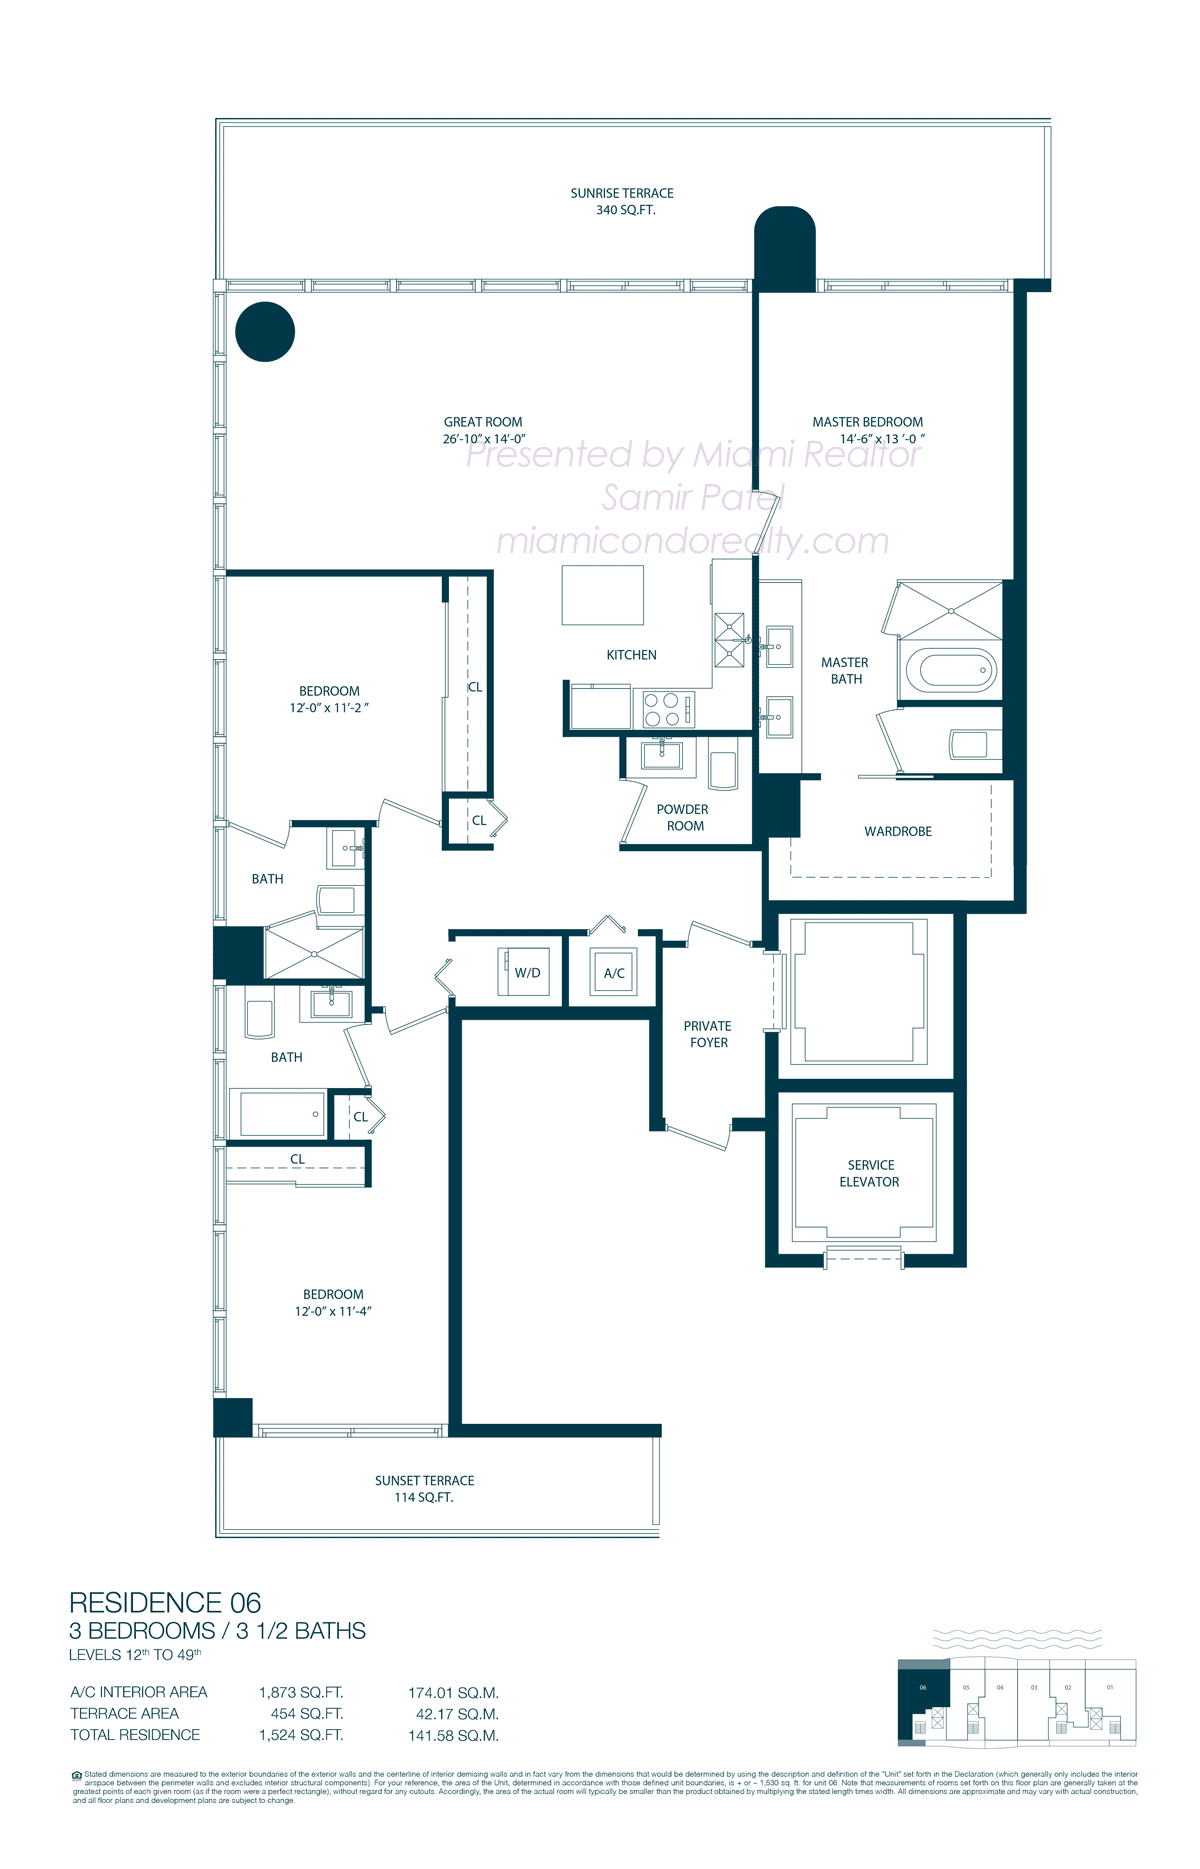 Floorplan of One Paraiso Condominium of 06 Line in Building